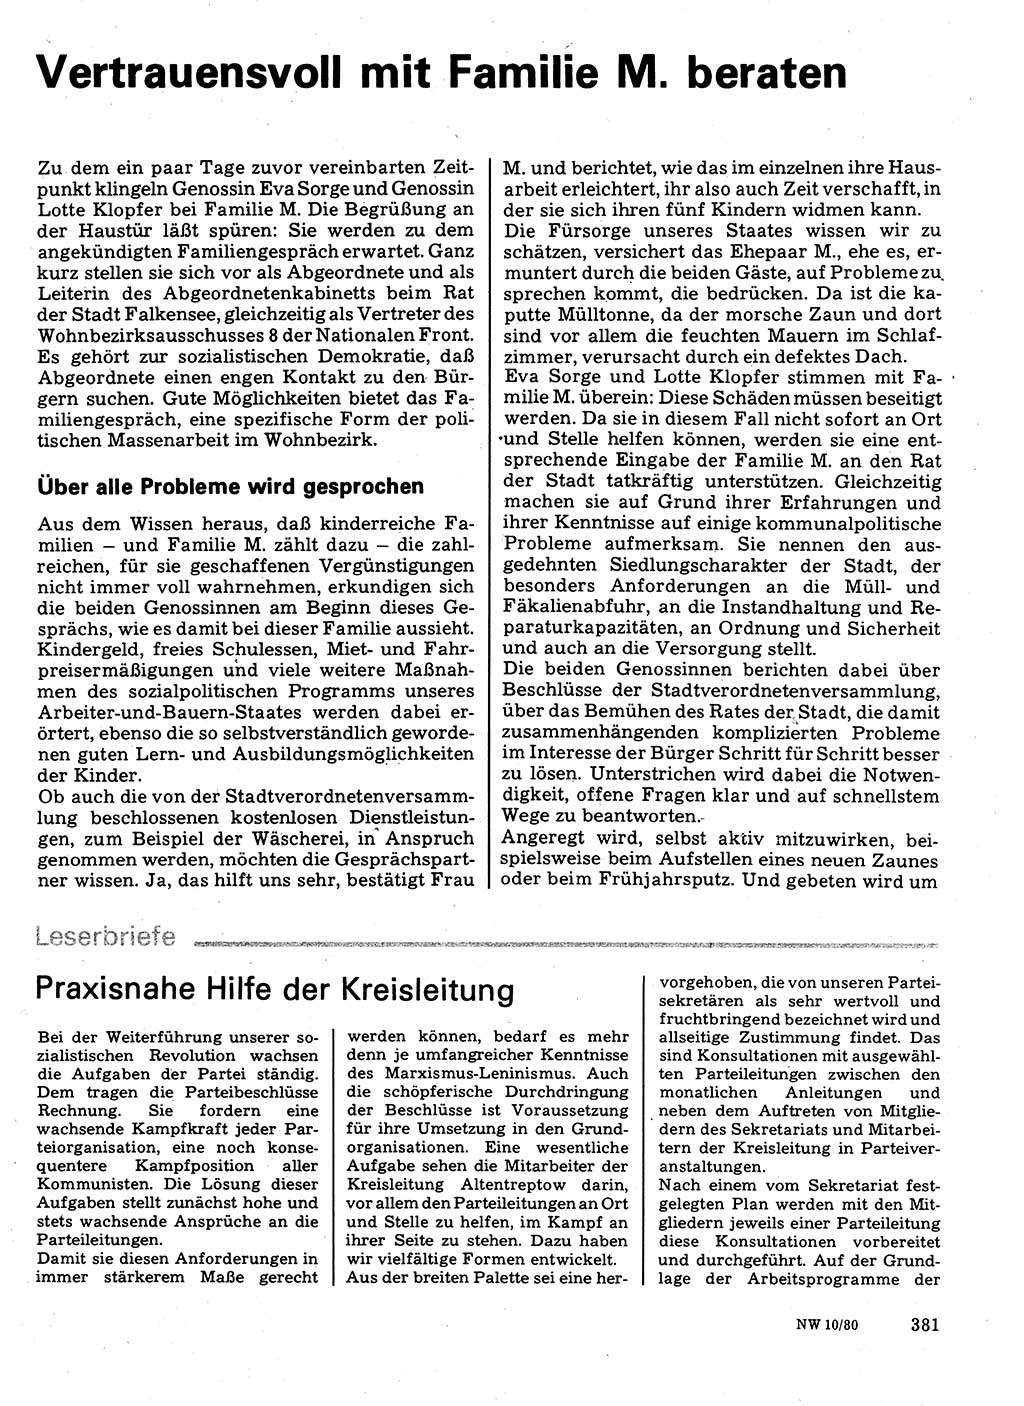 Neuer Weg (NW), Organ des Zentralkomitees (ZK) der SED (Sozialistische Einheitspartei Deutschlands) für Fragen des Parteilebens, 35. Jahrgang [Deutsche Demokratische Republik (DDR)] 1980, Seite 381 (NW ZK SED DDR 1980, S. 381)